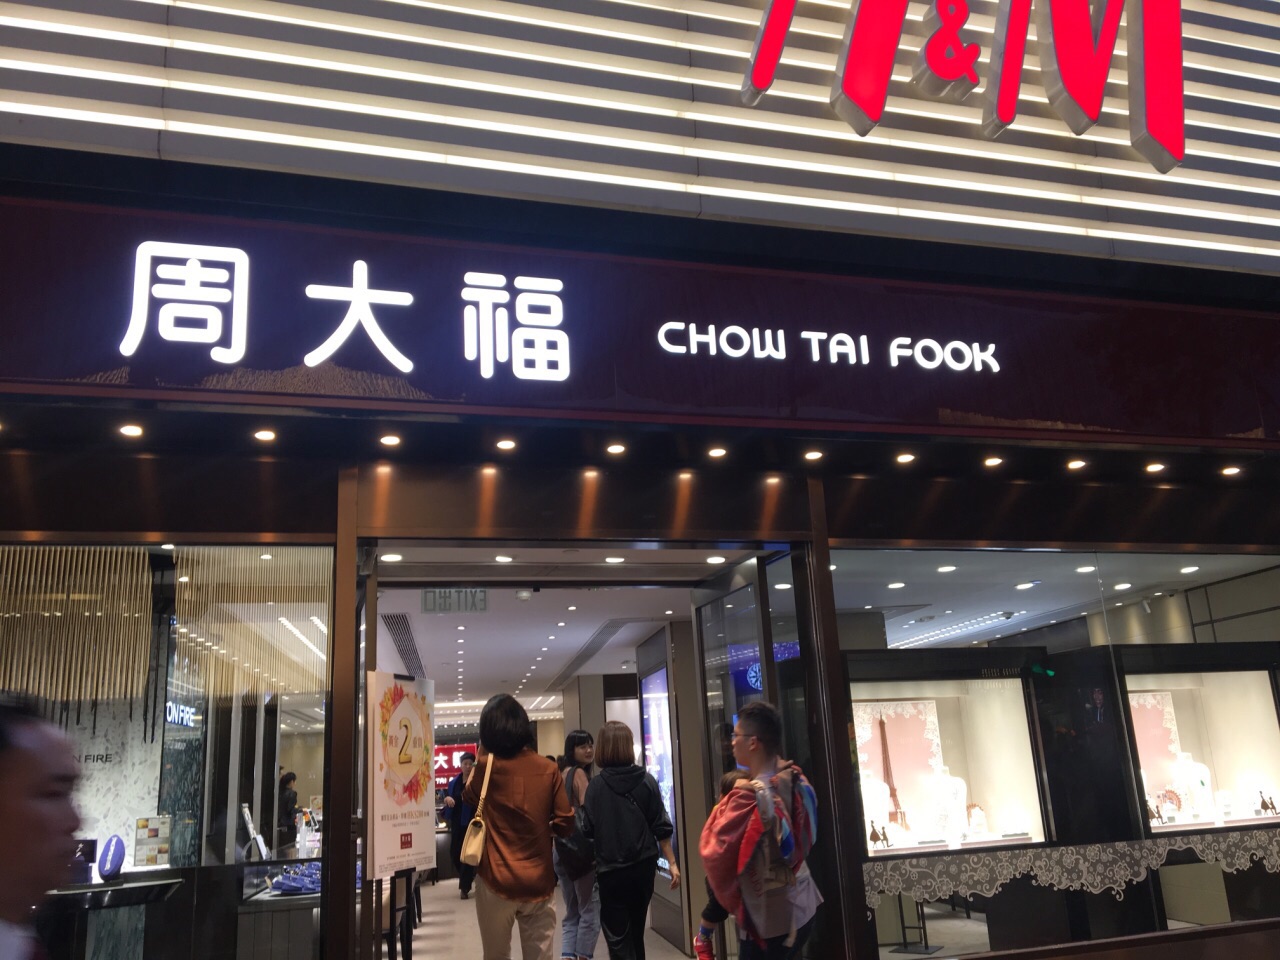 携程攻略 香港h M 新港中心店 购物 都知道广东道是奢侈品一条街 但这也不全对 主要是指的海港城那一边